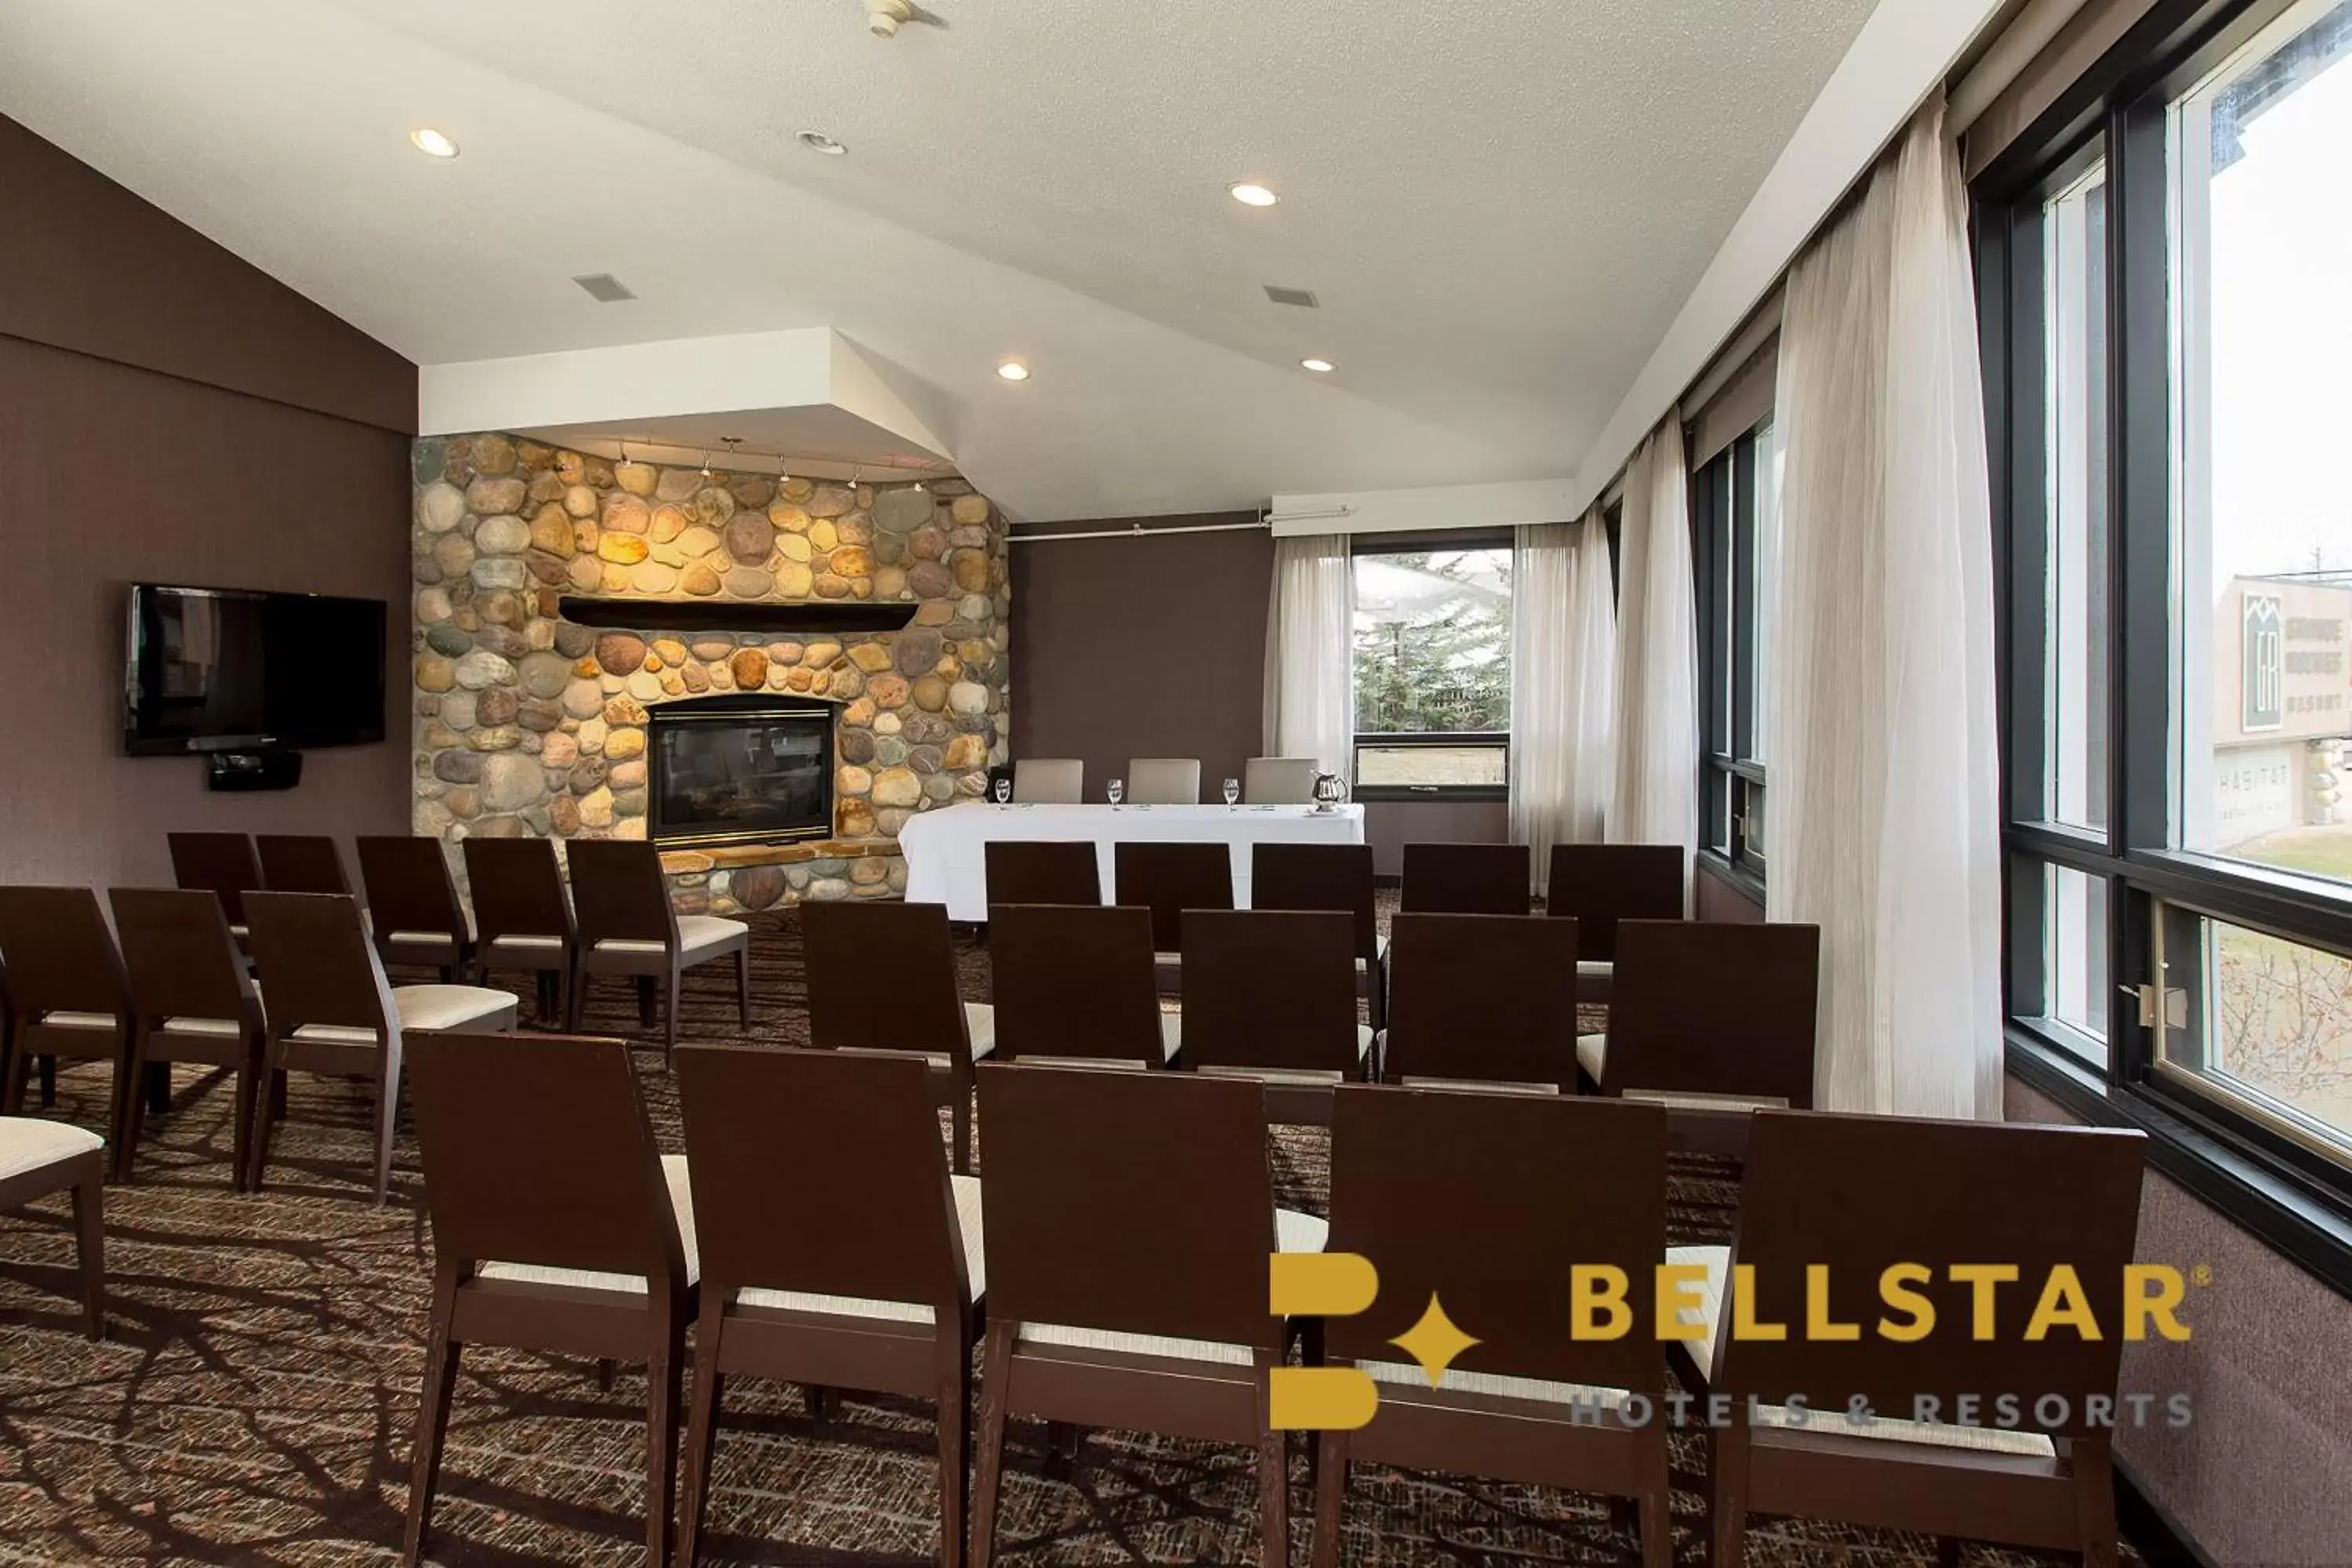 Meeting/conference room in Grande Rockies Resort-Bellstar Hotels & Resorts